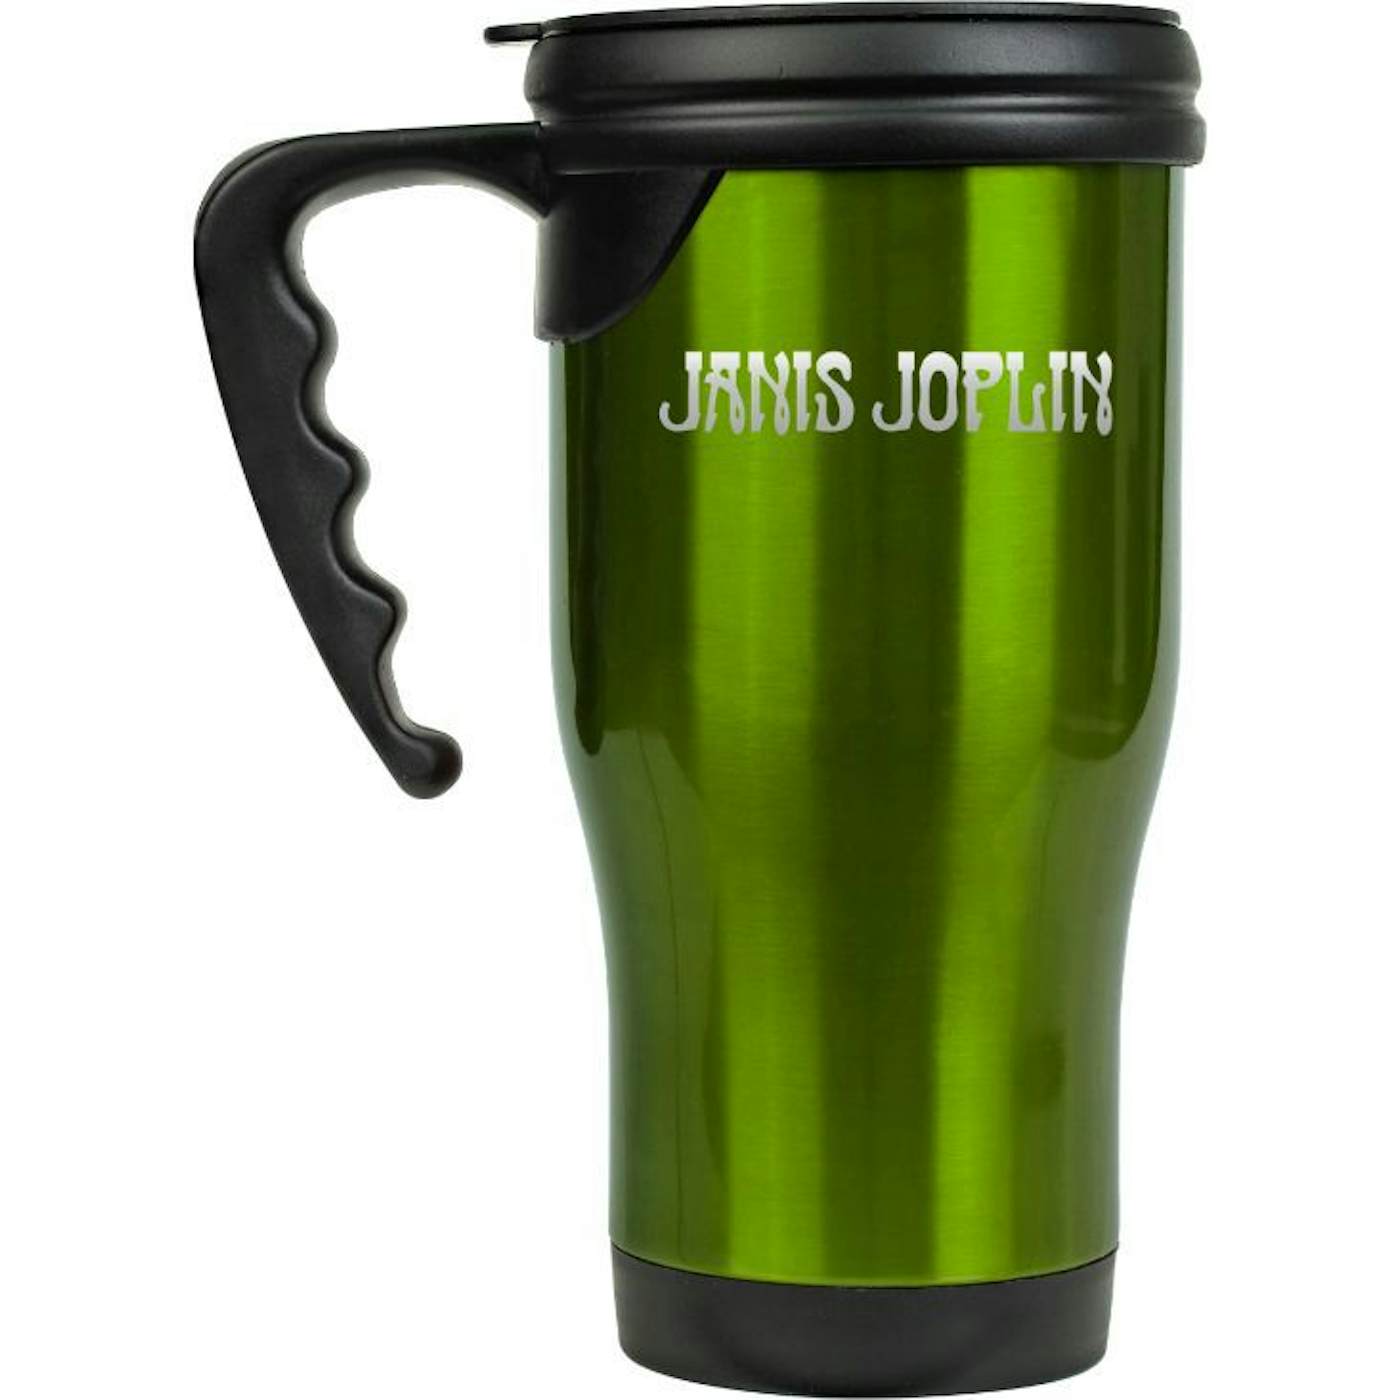 Firestarter Mug with Handle and slider lid